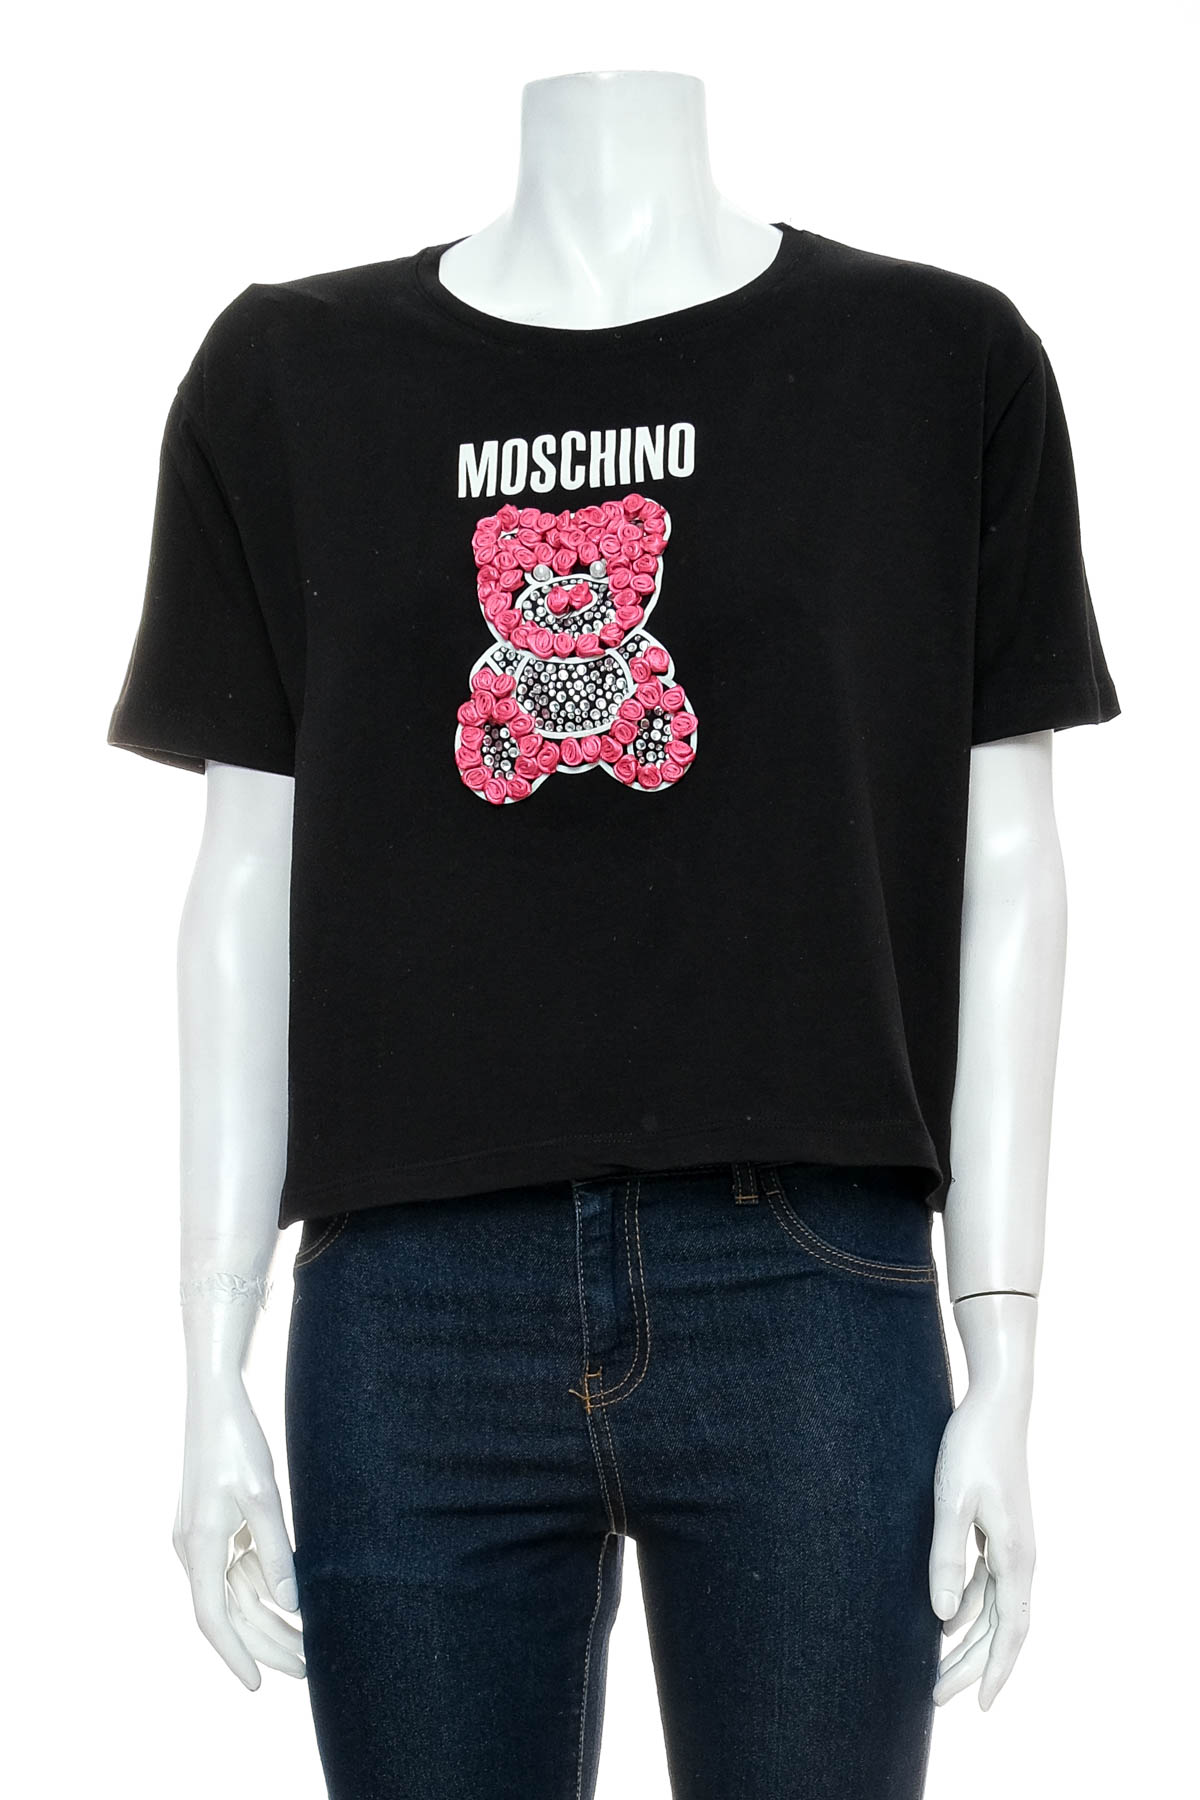 Γυναικεία μπλούζα - Moschino - 0